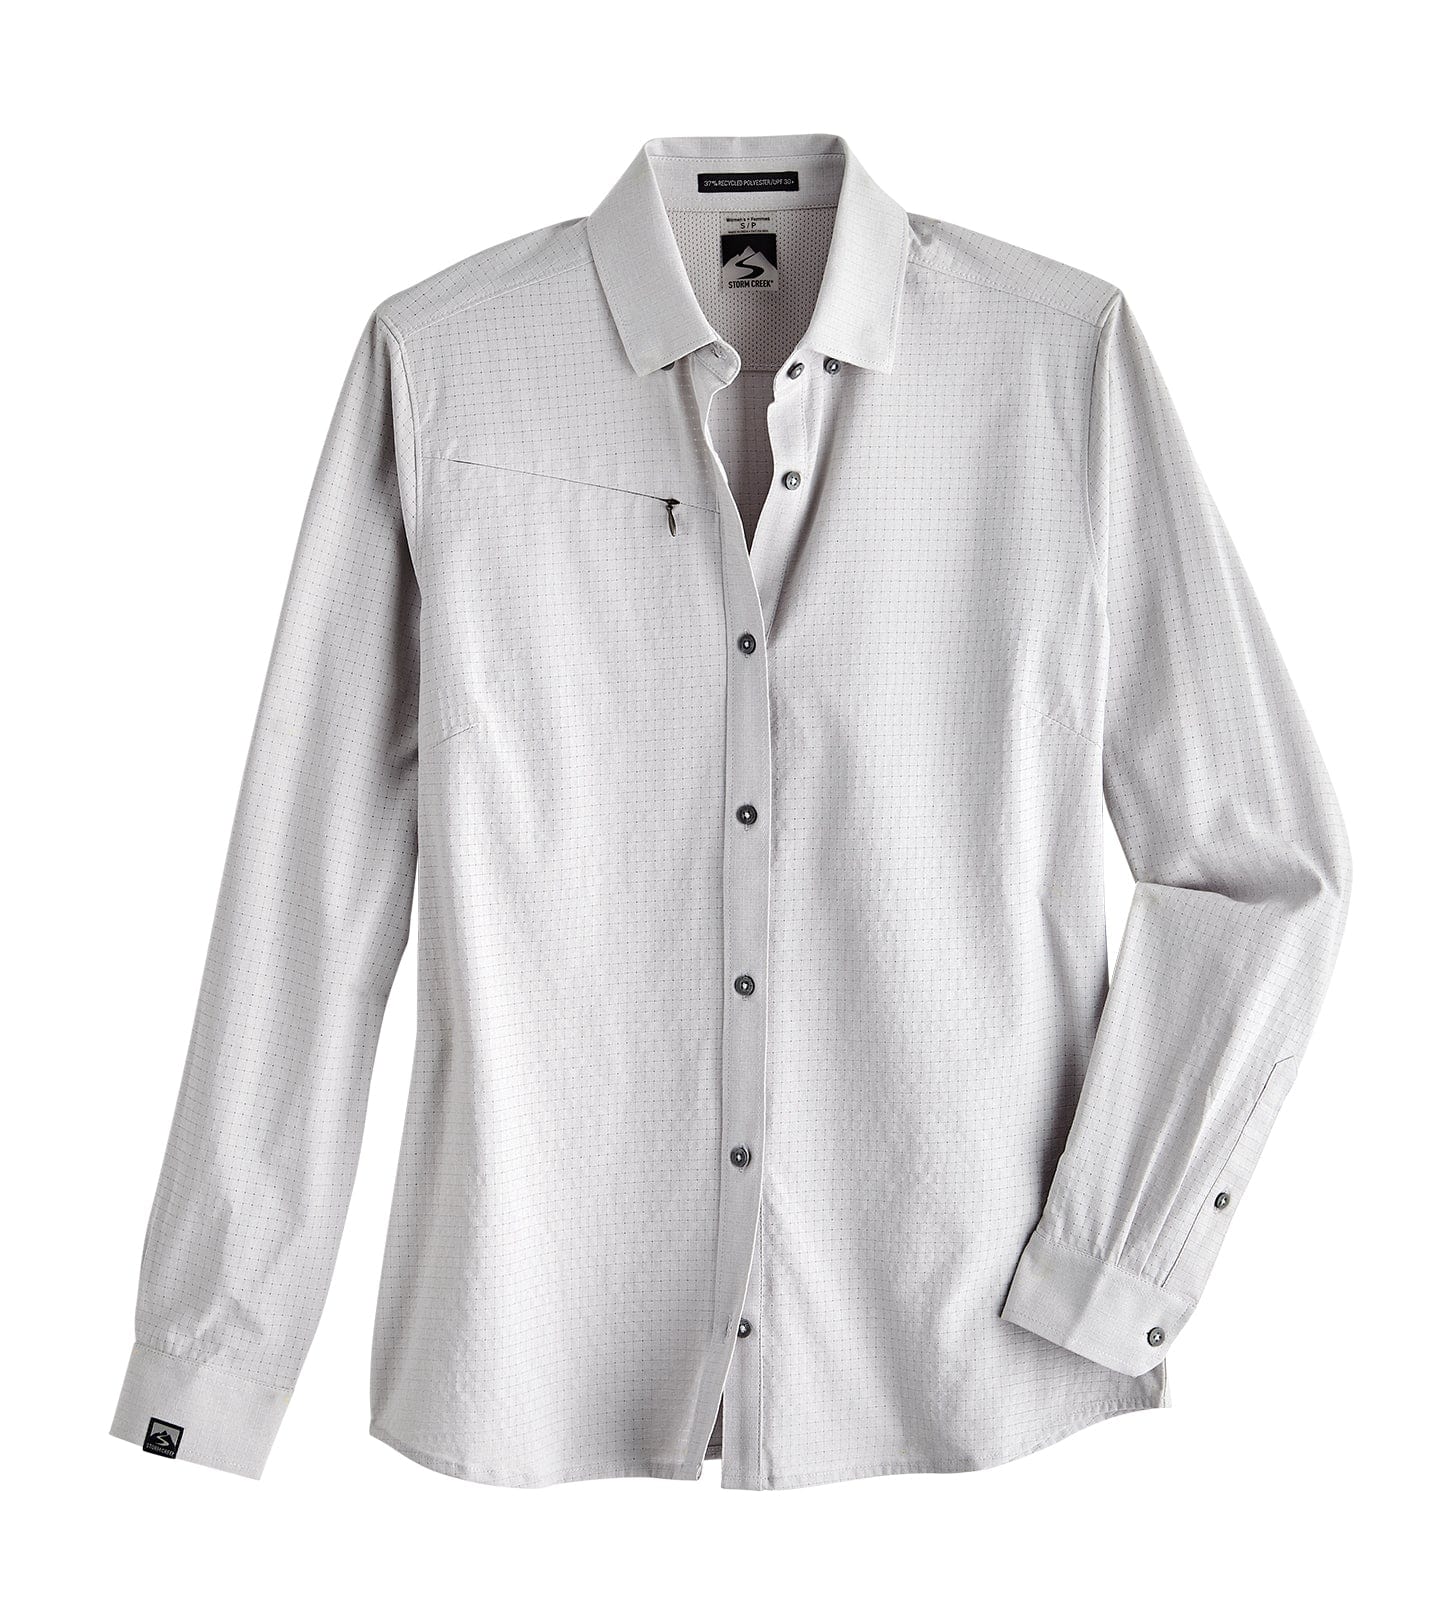 Naturalist Men's Short Sleeve Button Up Shirt, Gray / L